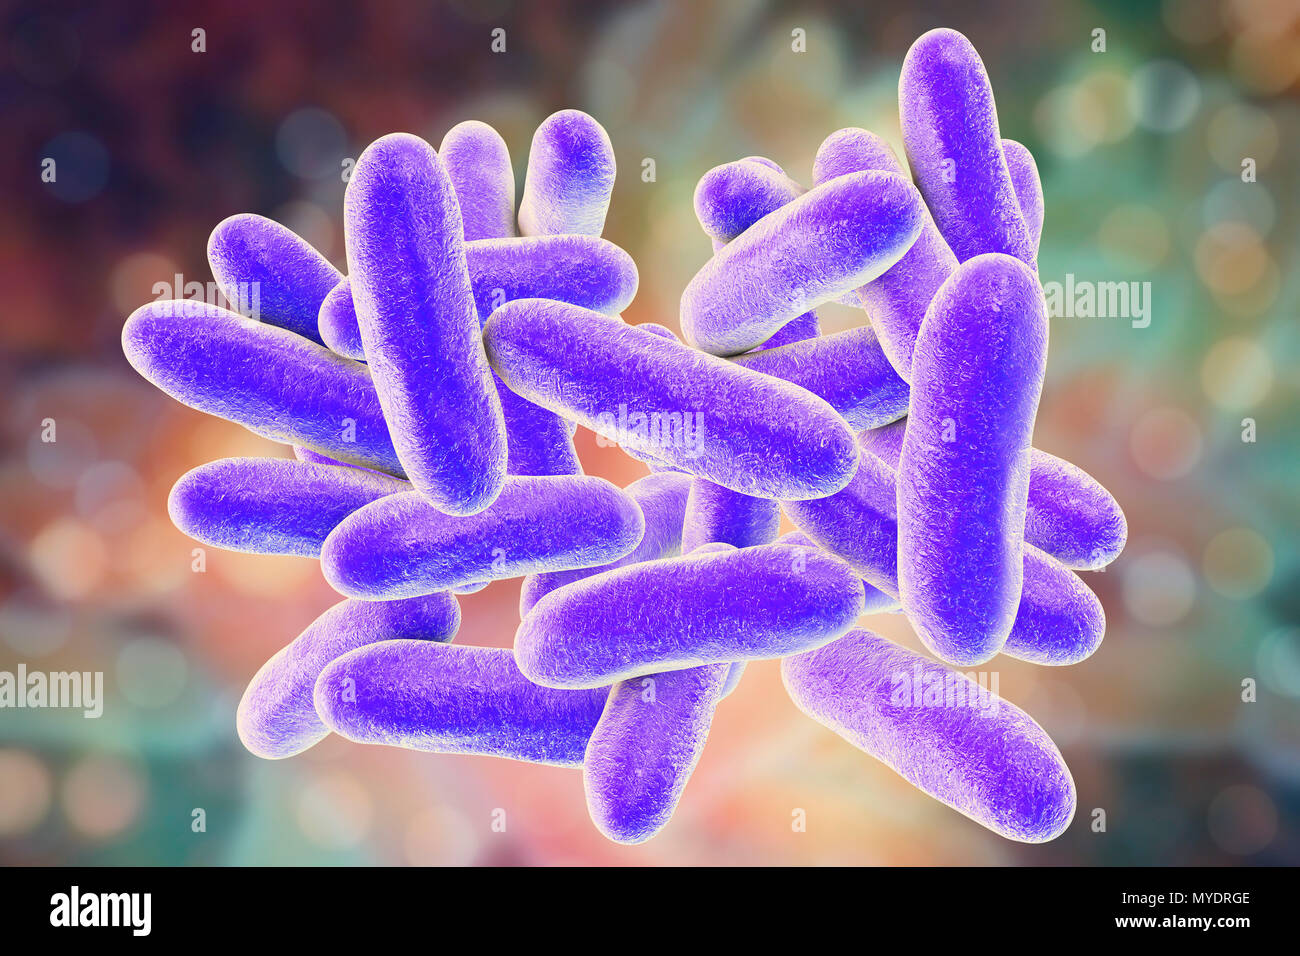 Enfermedad del legionario- bacterias. Equipo ilustración de la bacteria  Legionella pneumophila, causante de la enfermedad del legionario. Estos  bacilos (en forma de varilla) son bacterias Gram-negativas. L. pneumophila  fue identificado como un